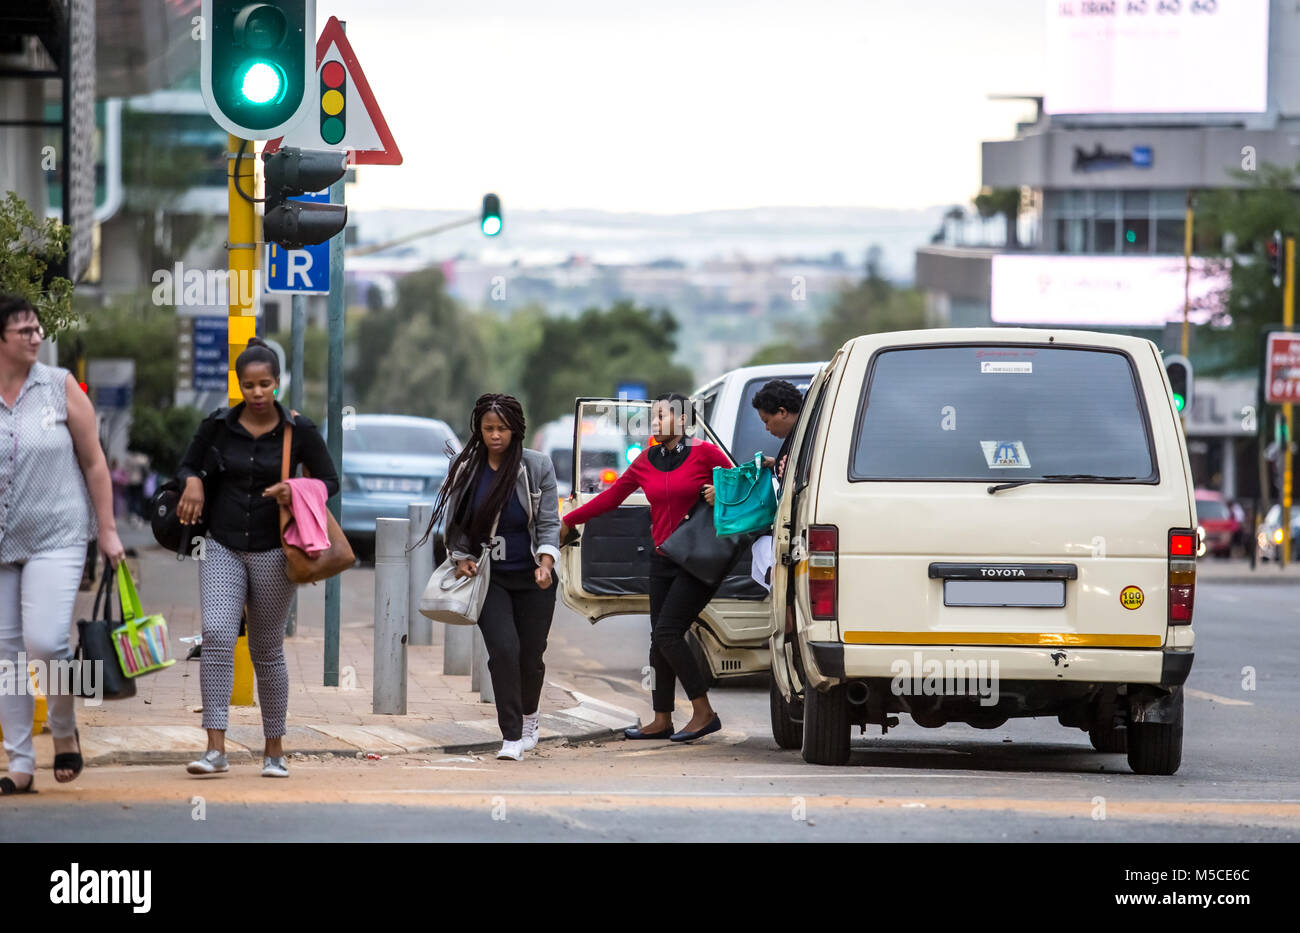 Leute, die aus dem Taxi in der Stadt. Johannesburg, Südafrika - 15. Februar 2018 Stockfoto